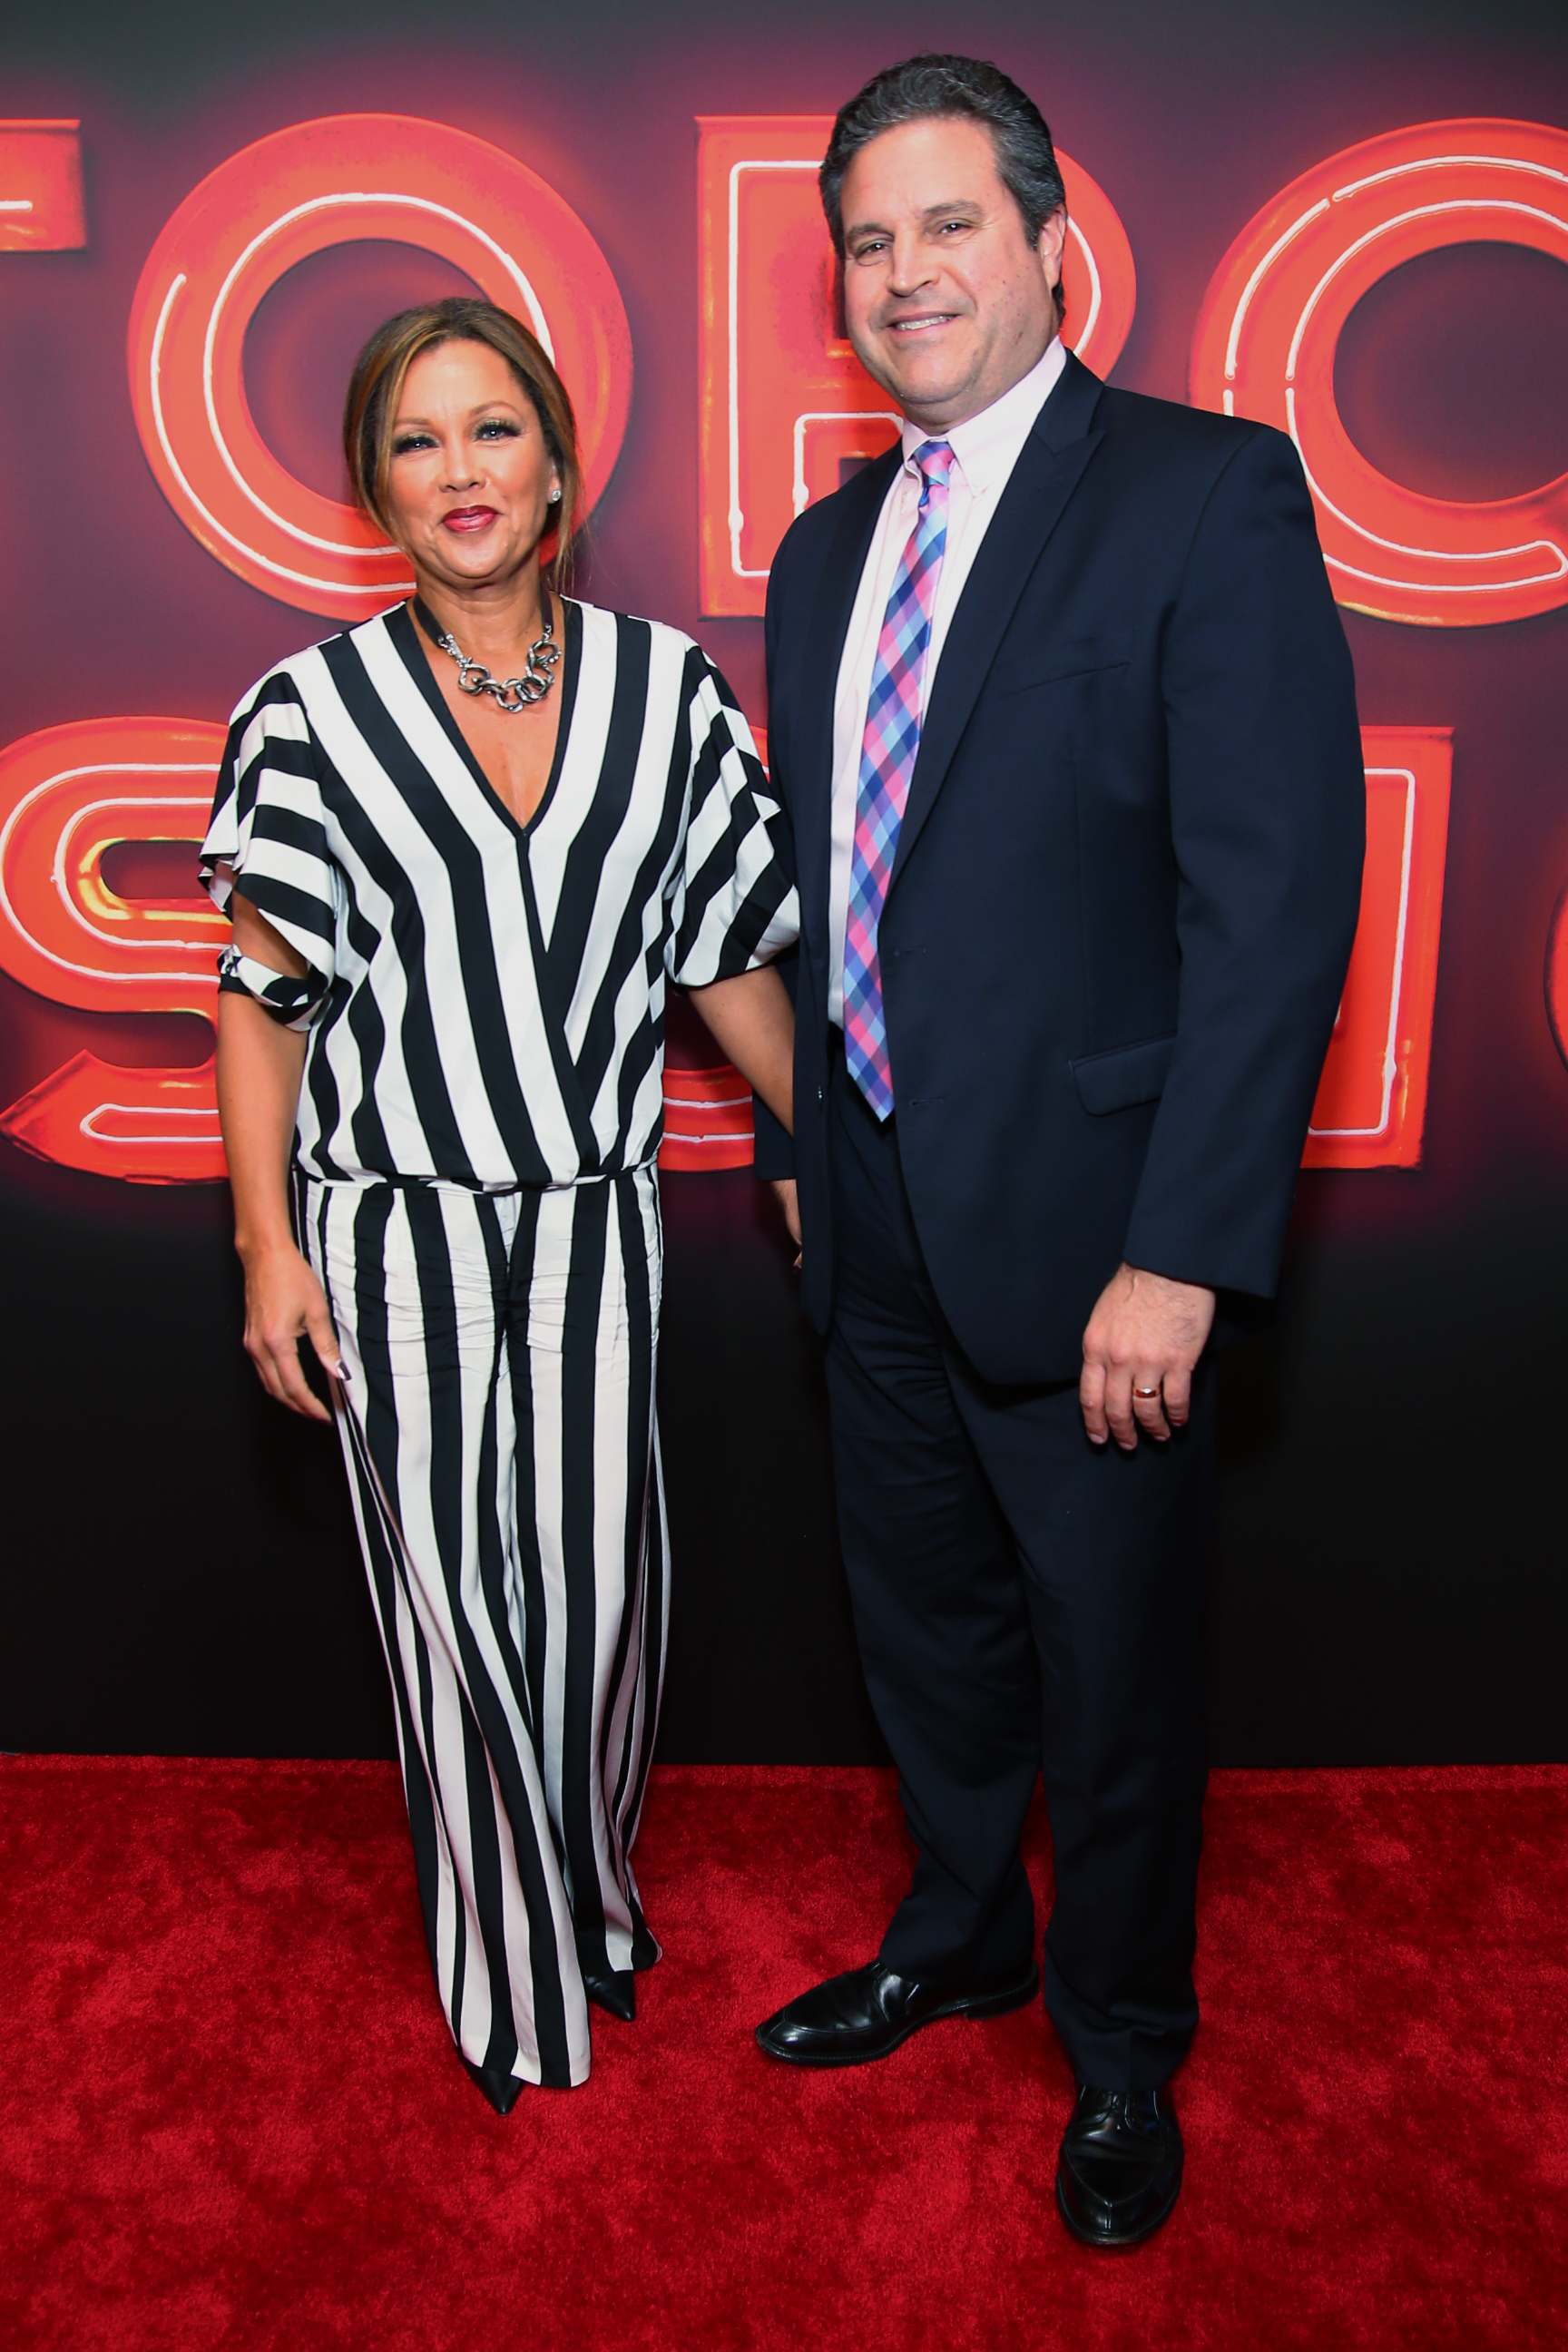 Vanessa Williams und Jim Skrip bei der Broadway-Eröffnung von "Torch Song" in New York City am 1. November 2018 | Quelle: Getty Images